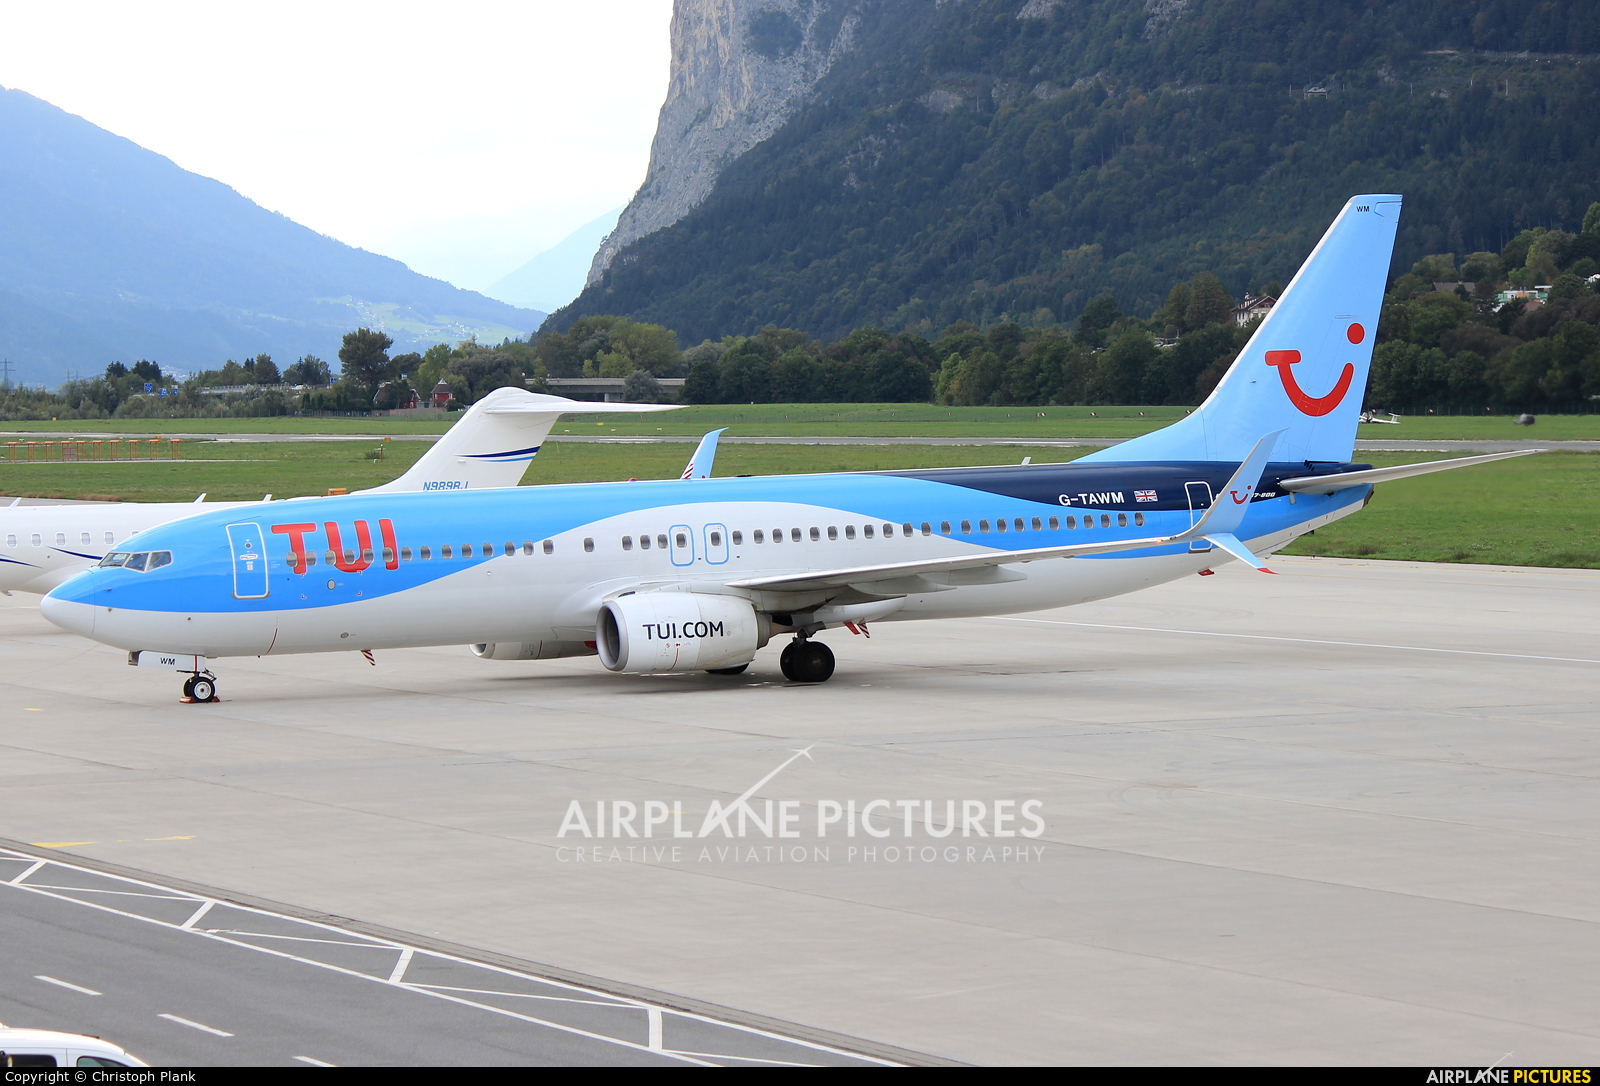 TUI Airways G-TAWM aircraft at Innsbruck